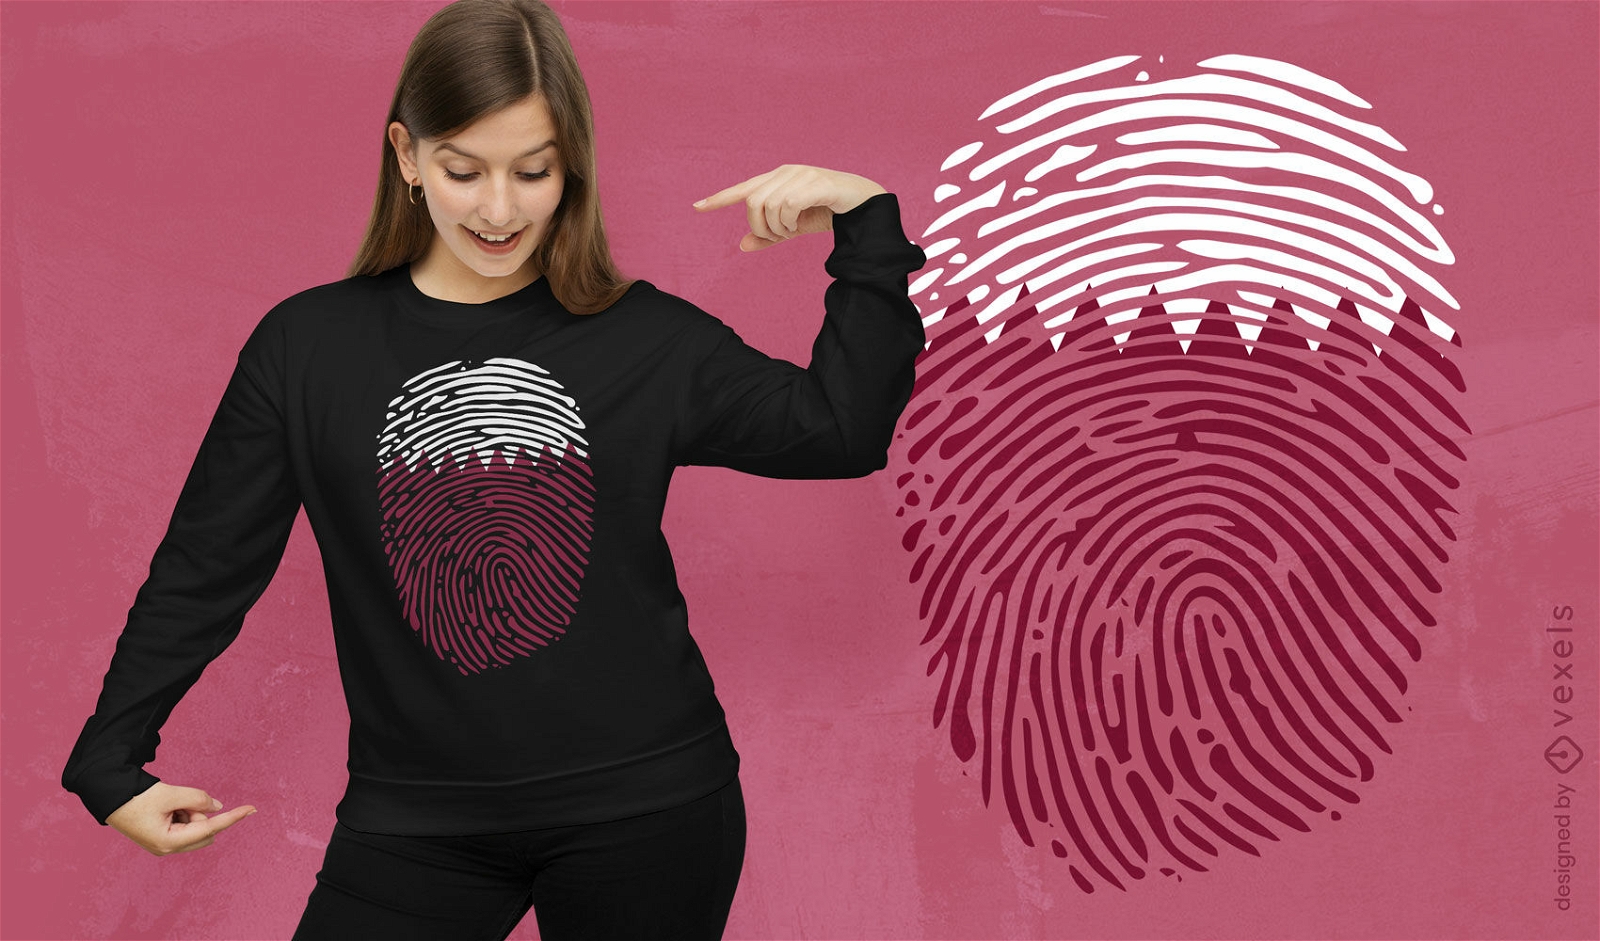 Katar-Flaggen-T-Shirt-Design mit Fingerabdr?cken